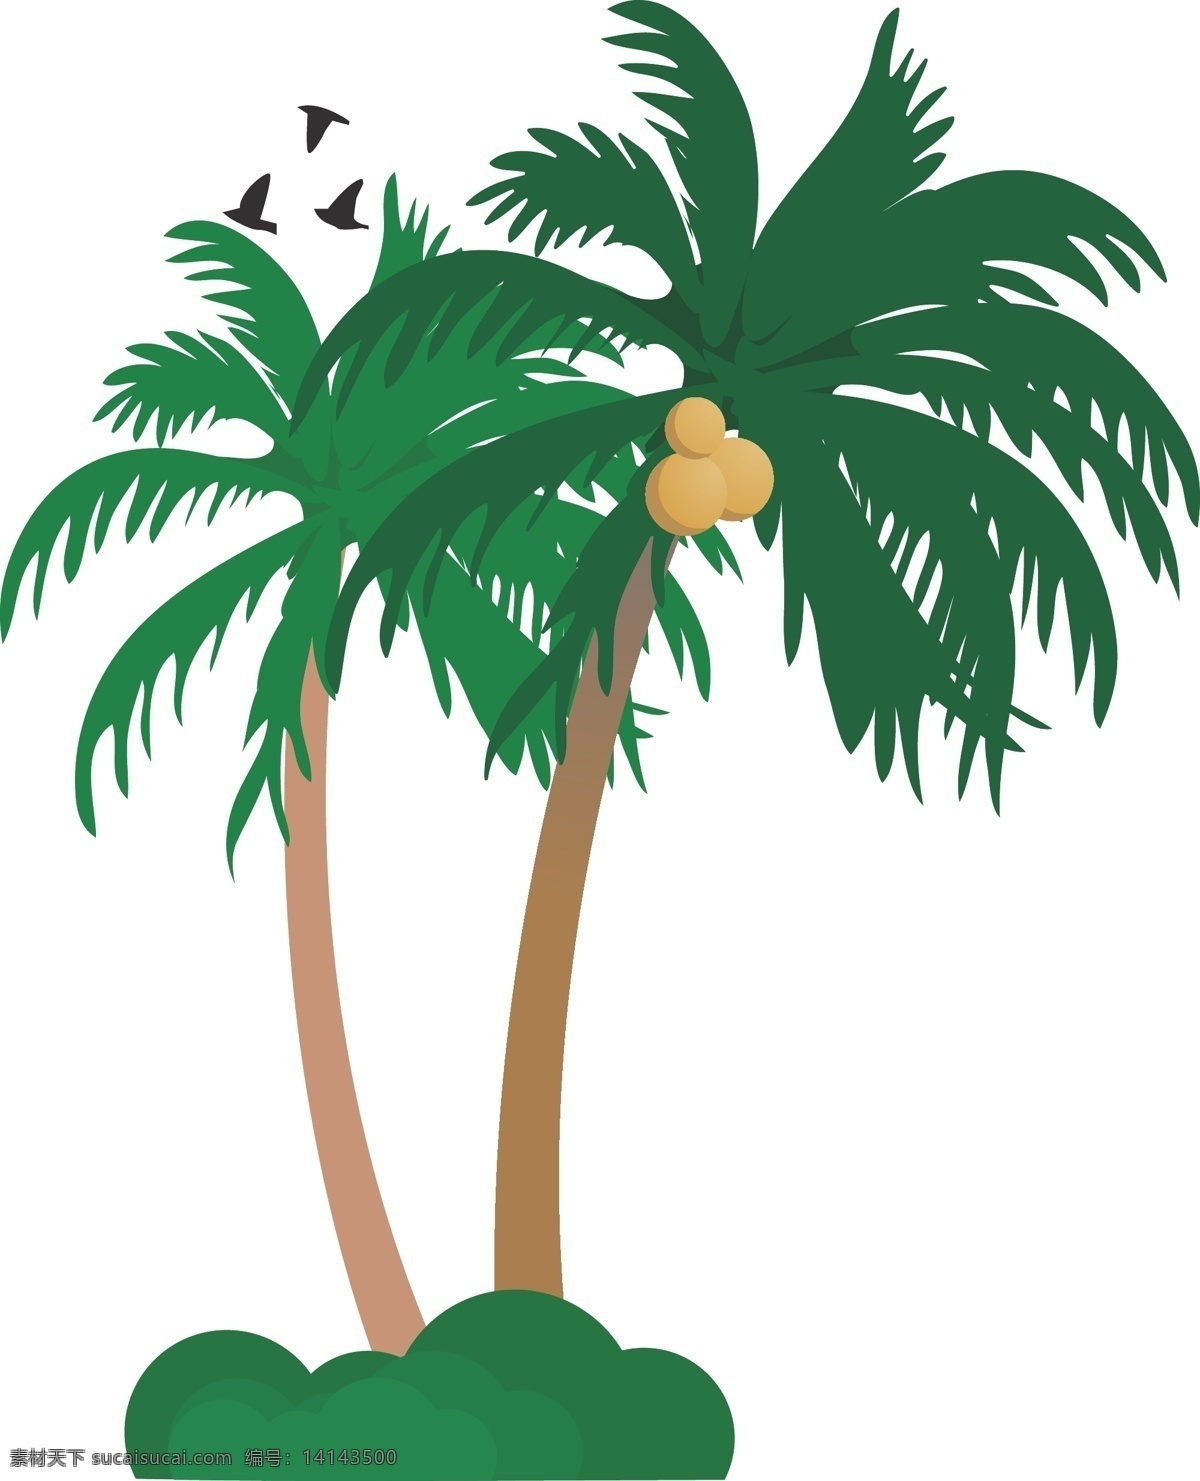 夏日 海边 椰子树 两棵椰子树 扁平化手绘 度假 休闲 轻松 绿色树木